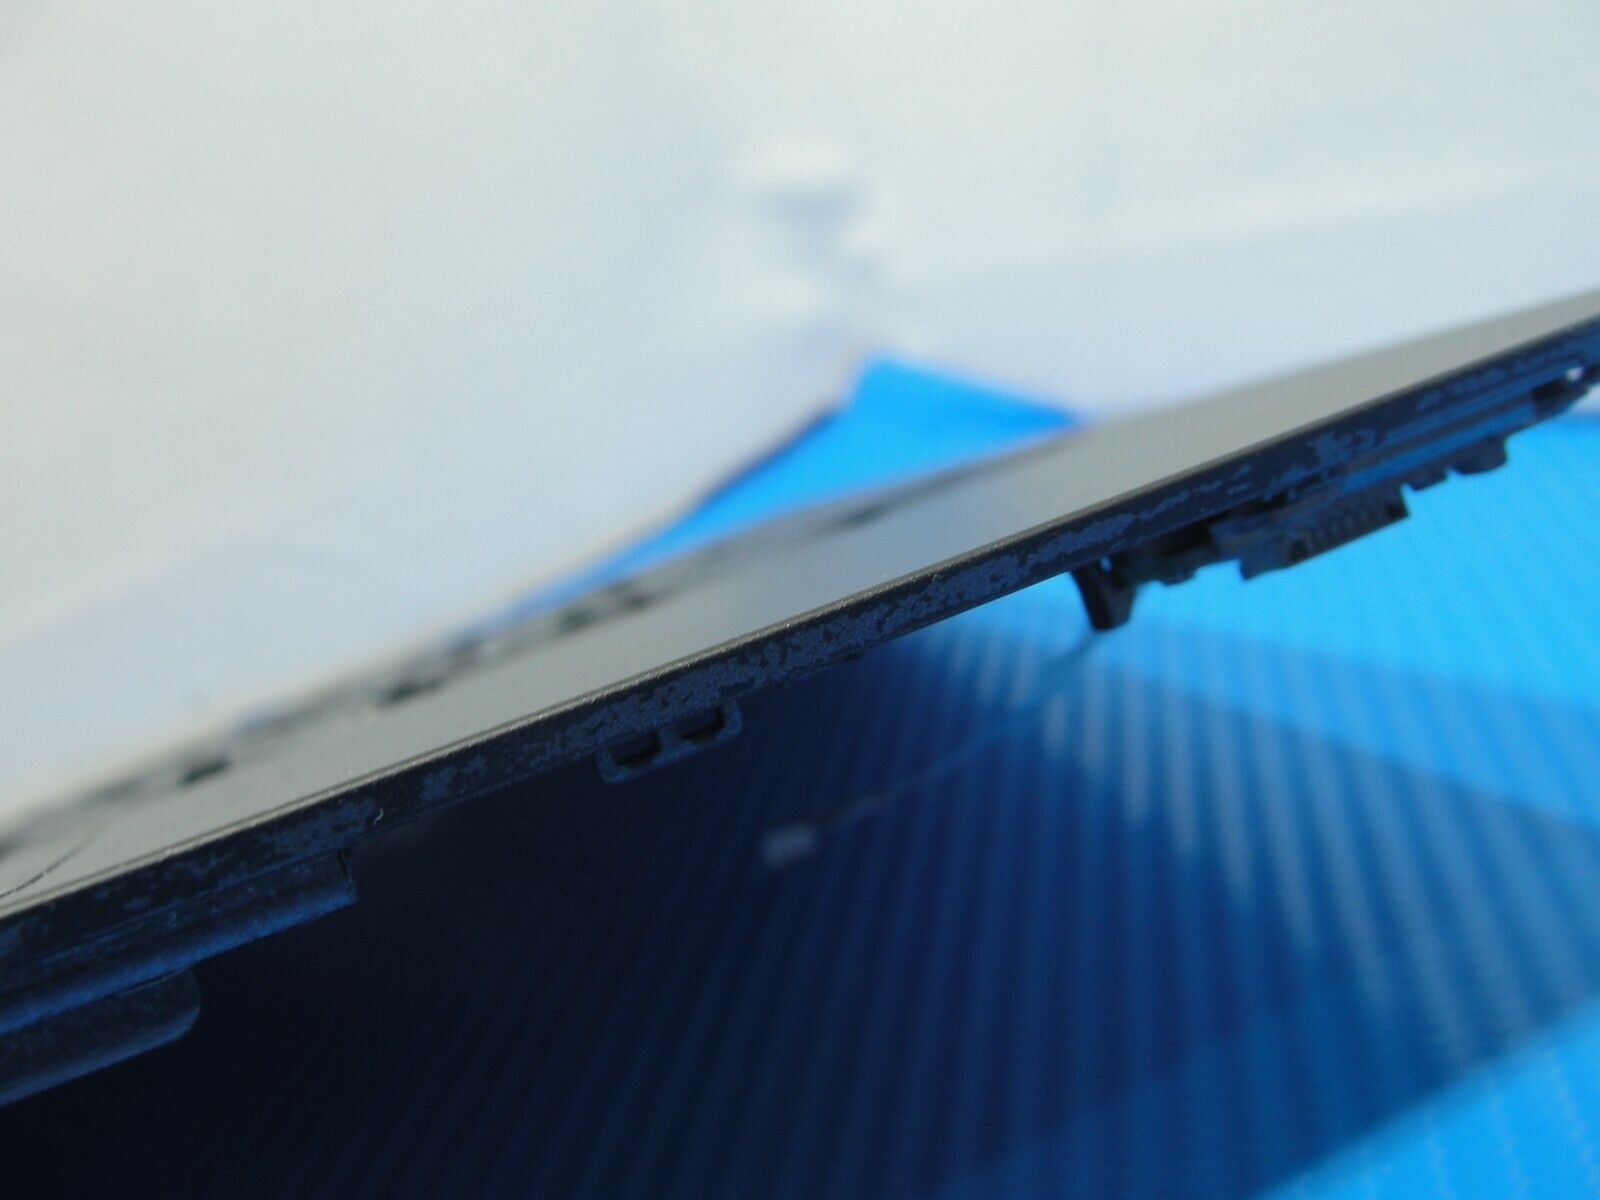 Dell Chromebook 11.6